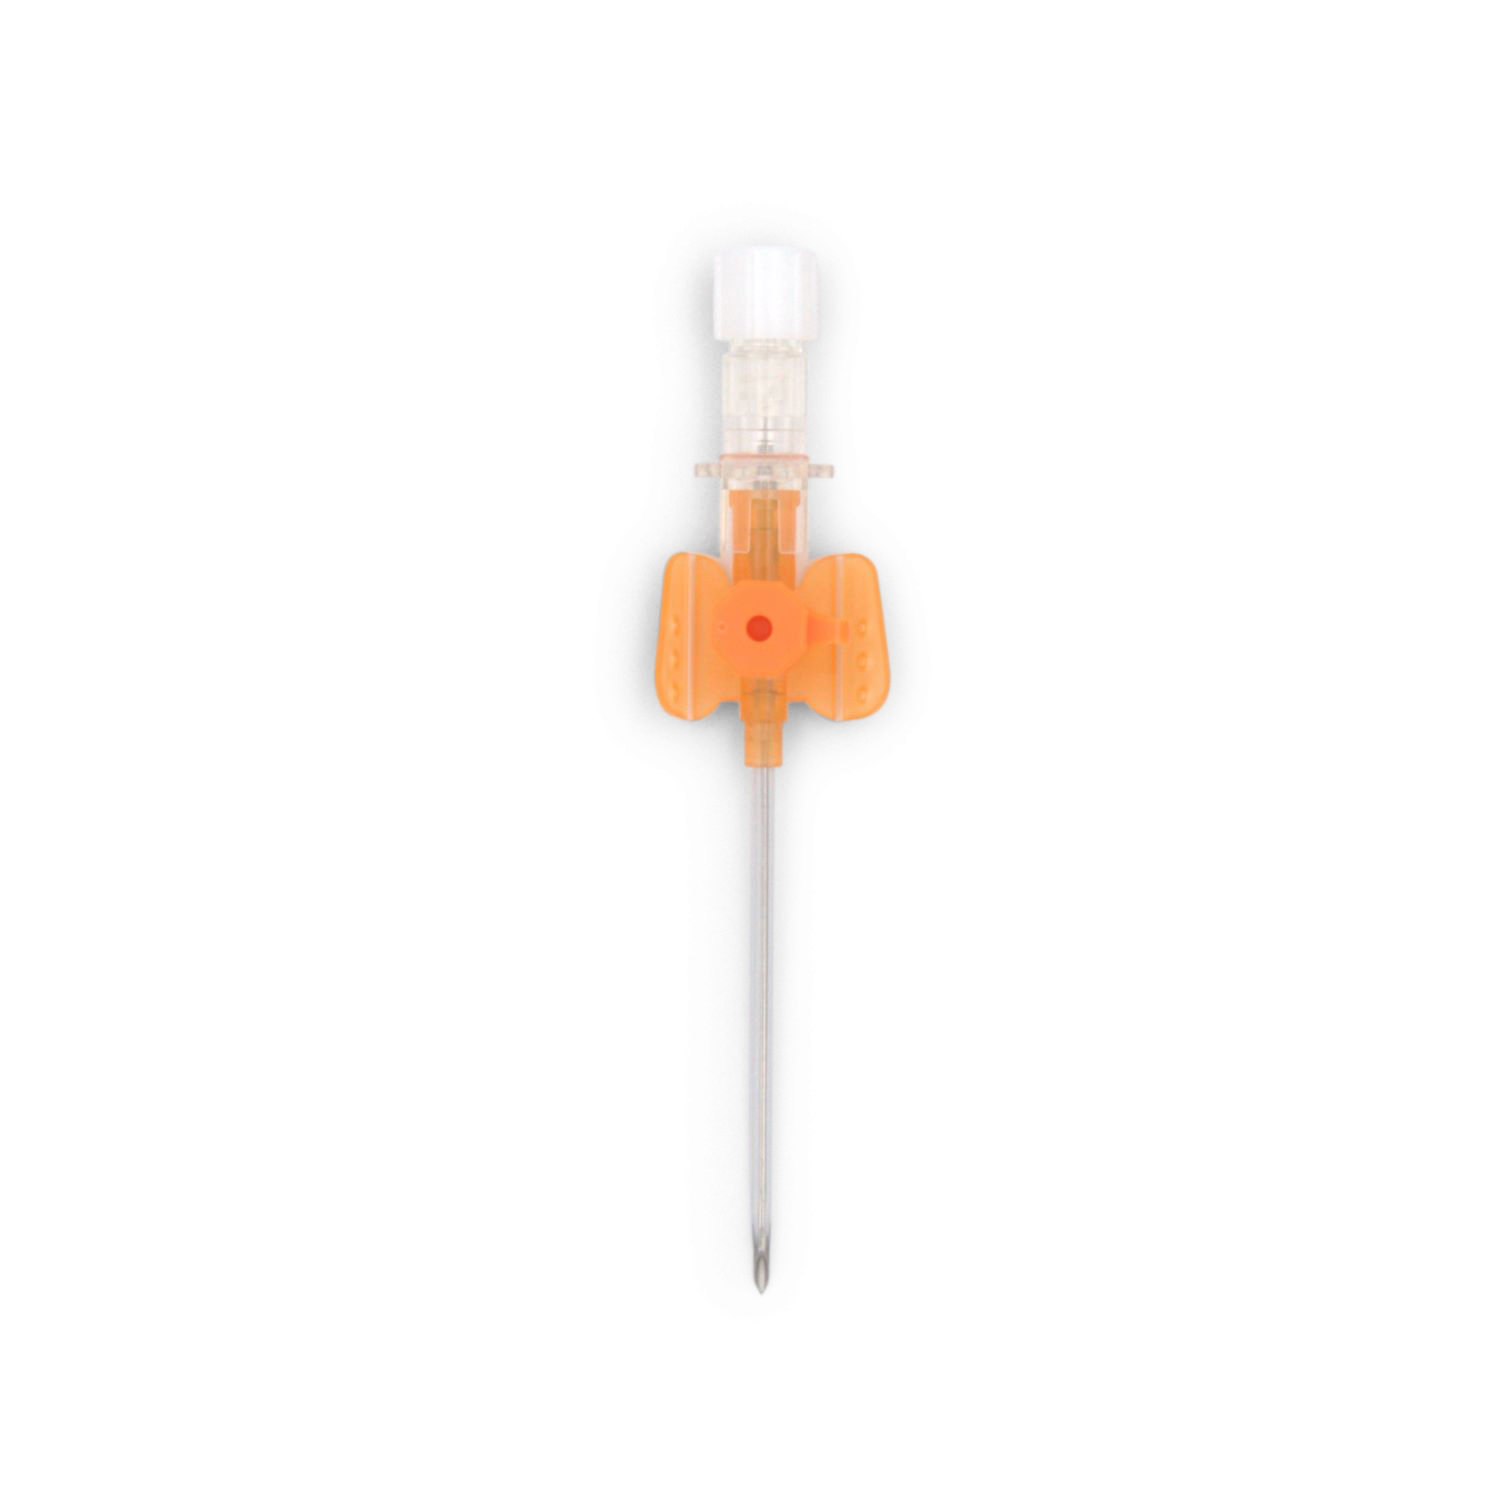 Vasofix® Safety Sicherheitsvenenverweilkanüle (2,20 x 50 mm G 14 orange)